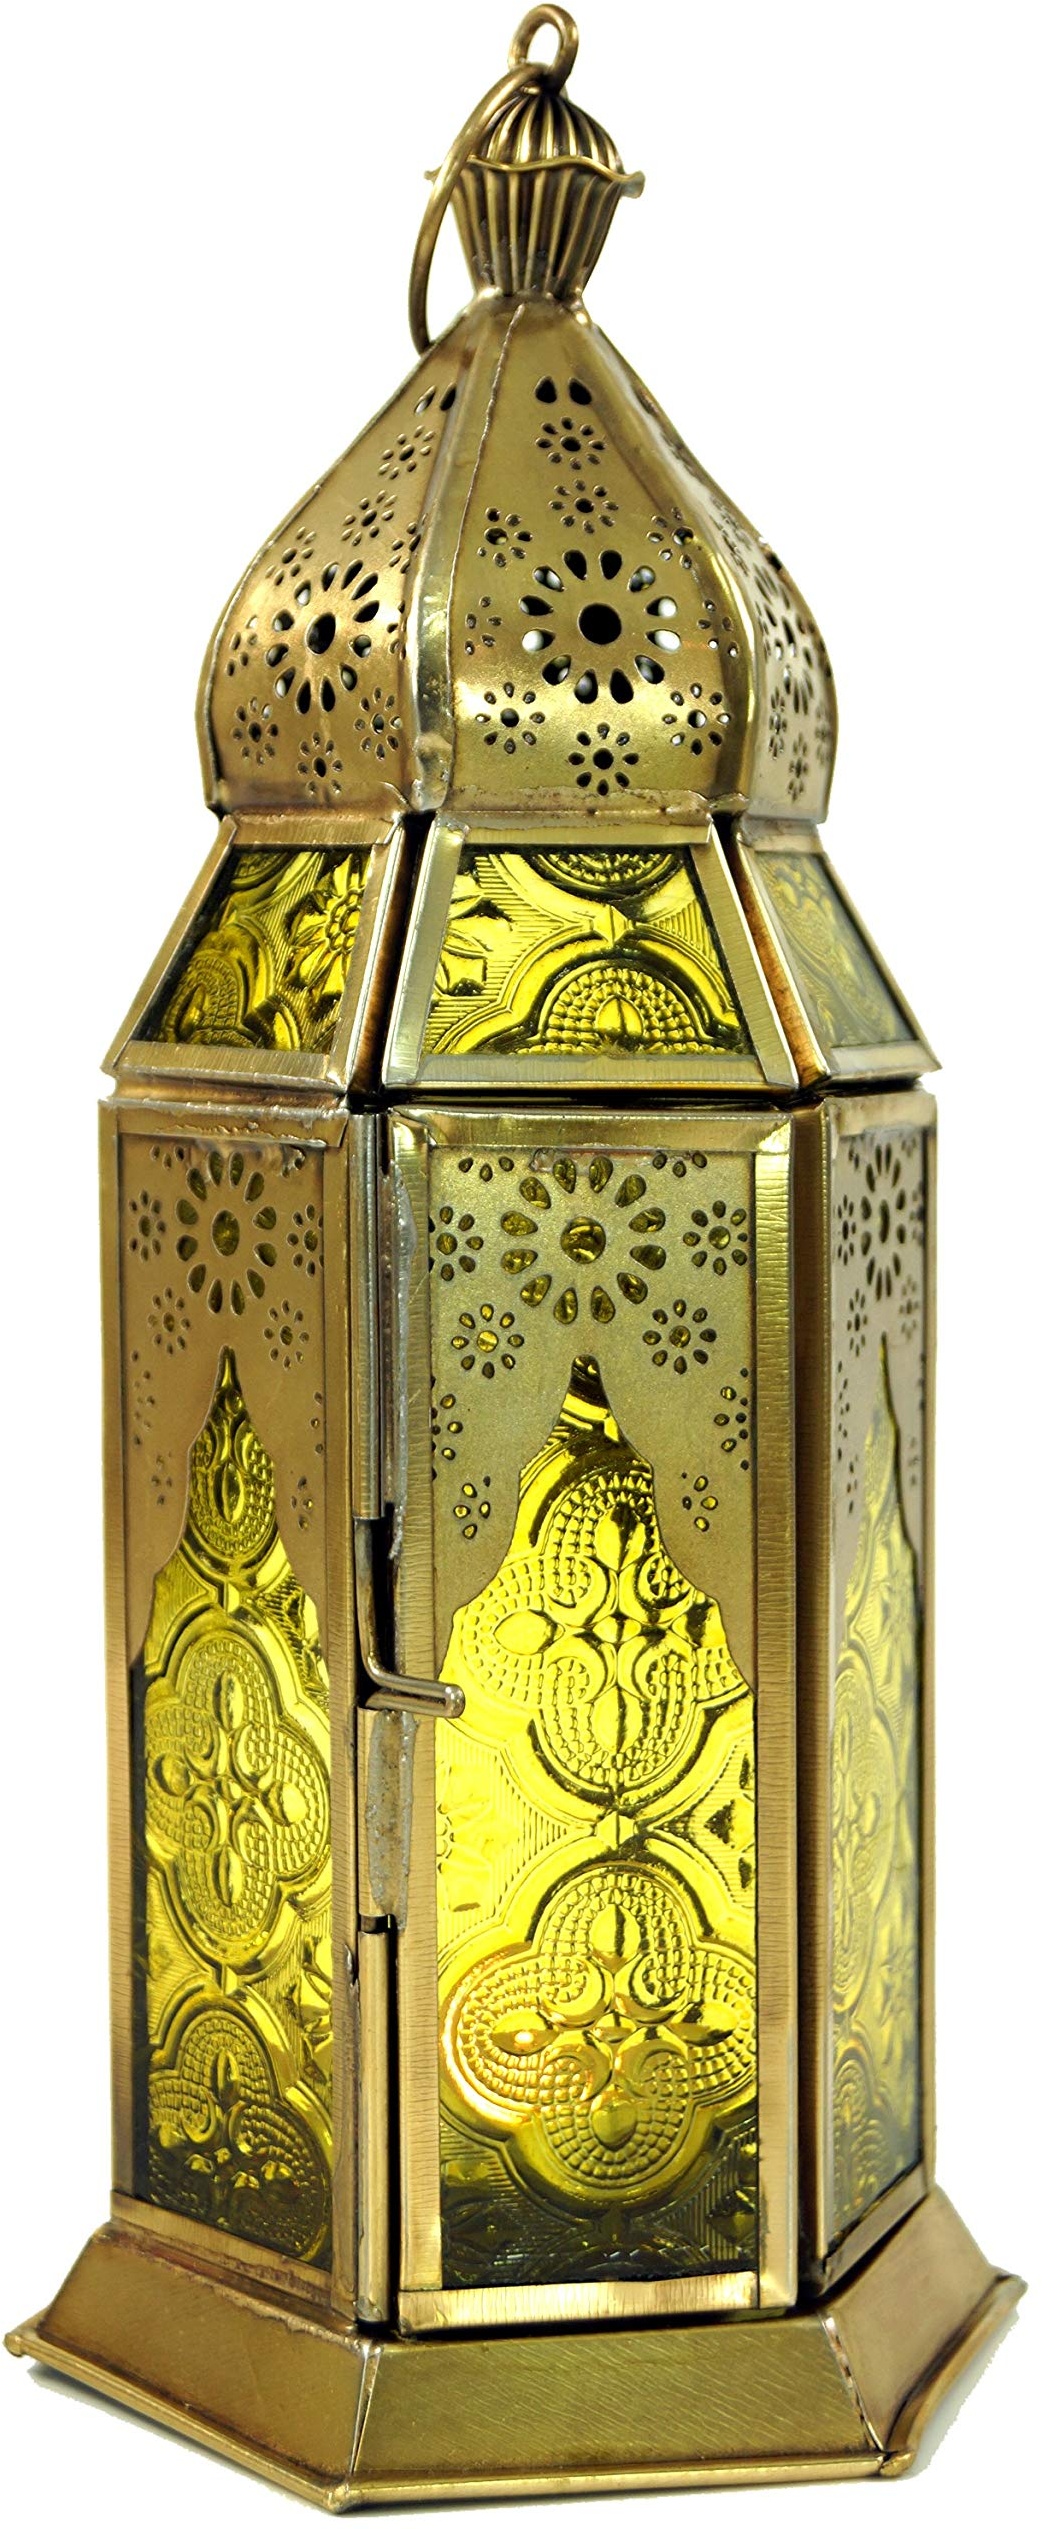 GURU SHOP Orientalische Metall/Glas Laterne in Marrokanischem Design, Windlicht, Gelb, Farbe: Gelb, 22x8,5x8,5 cm, Orientalische Laternen